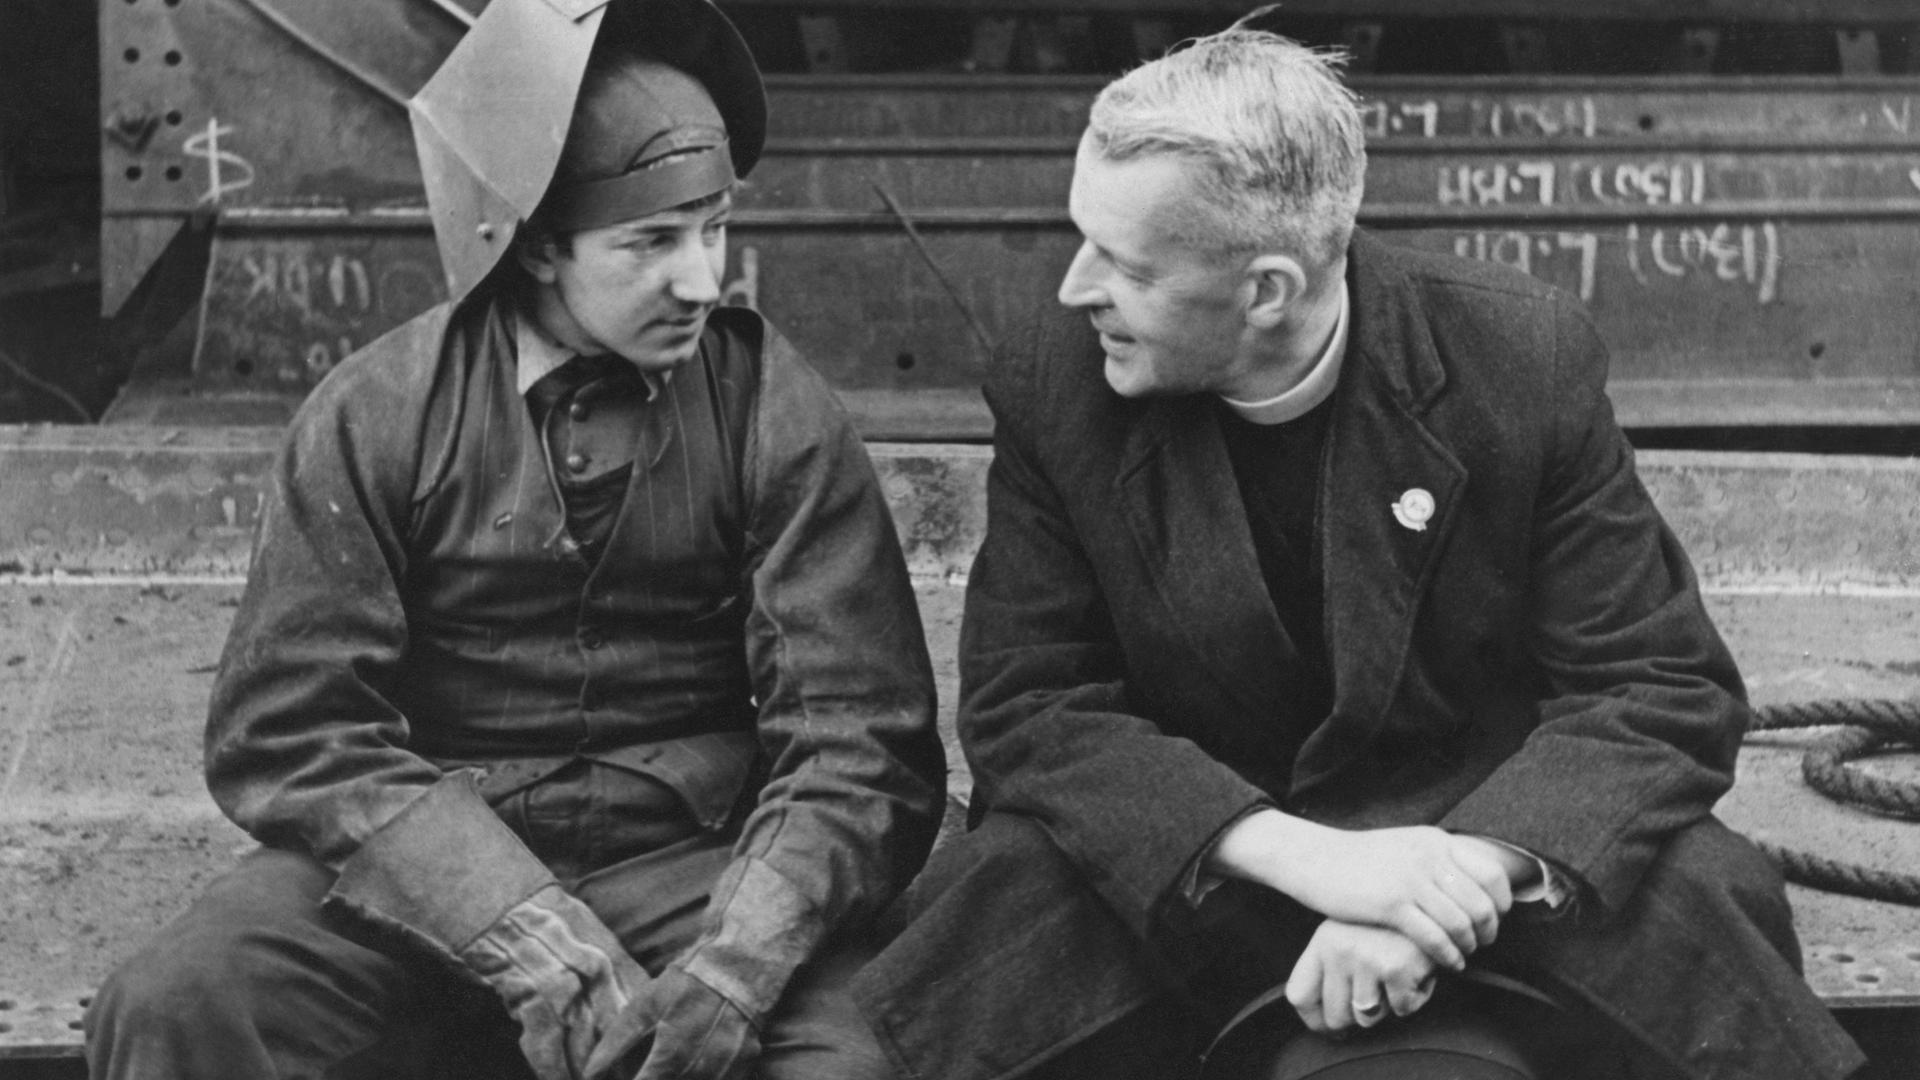 Historische Schwarzweißaufnahme eines Schweißers und eines Priesters, die sich sitzend vor einer Industrieszenerie, unterhalten.